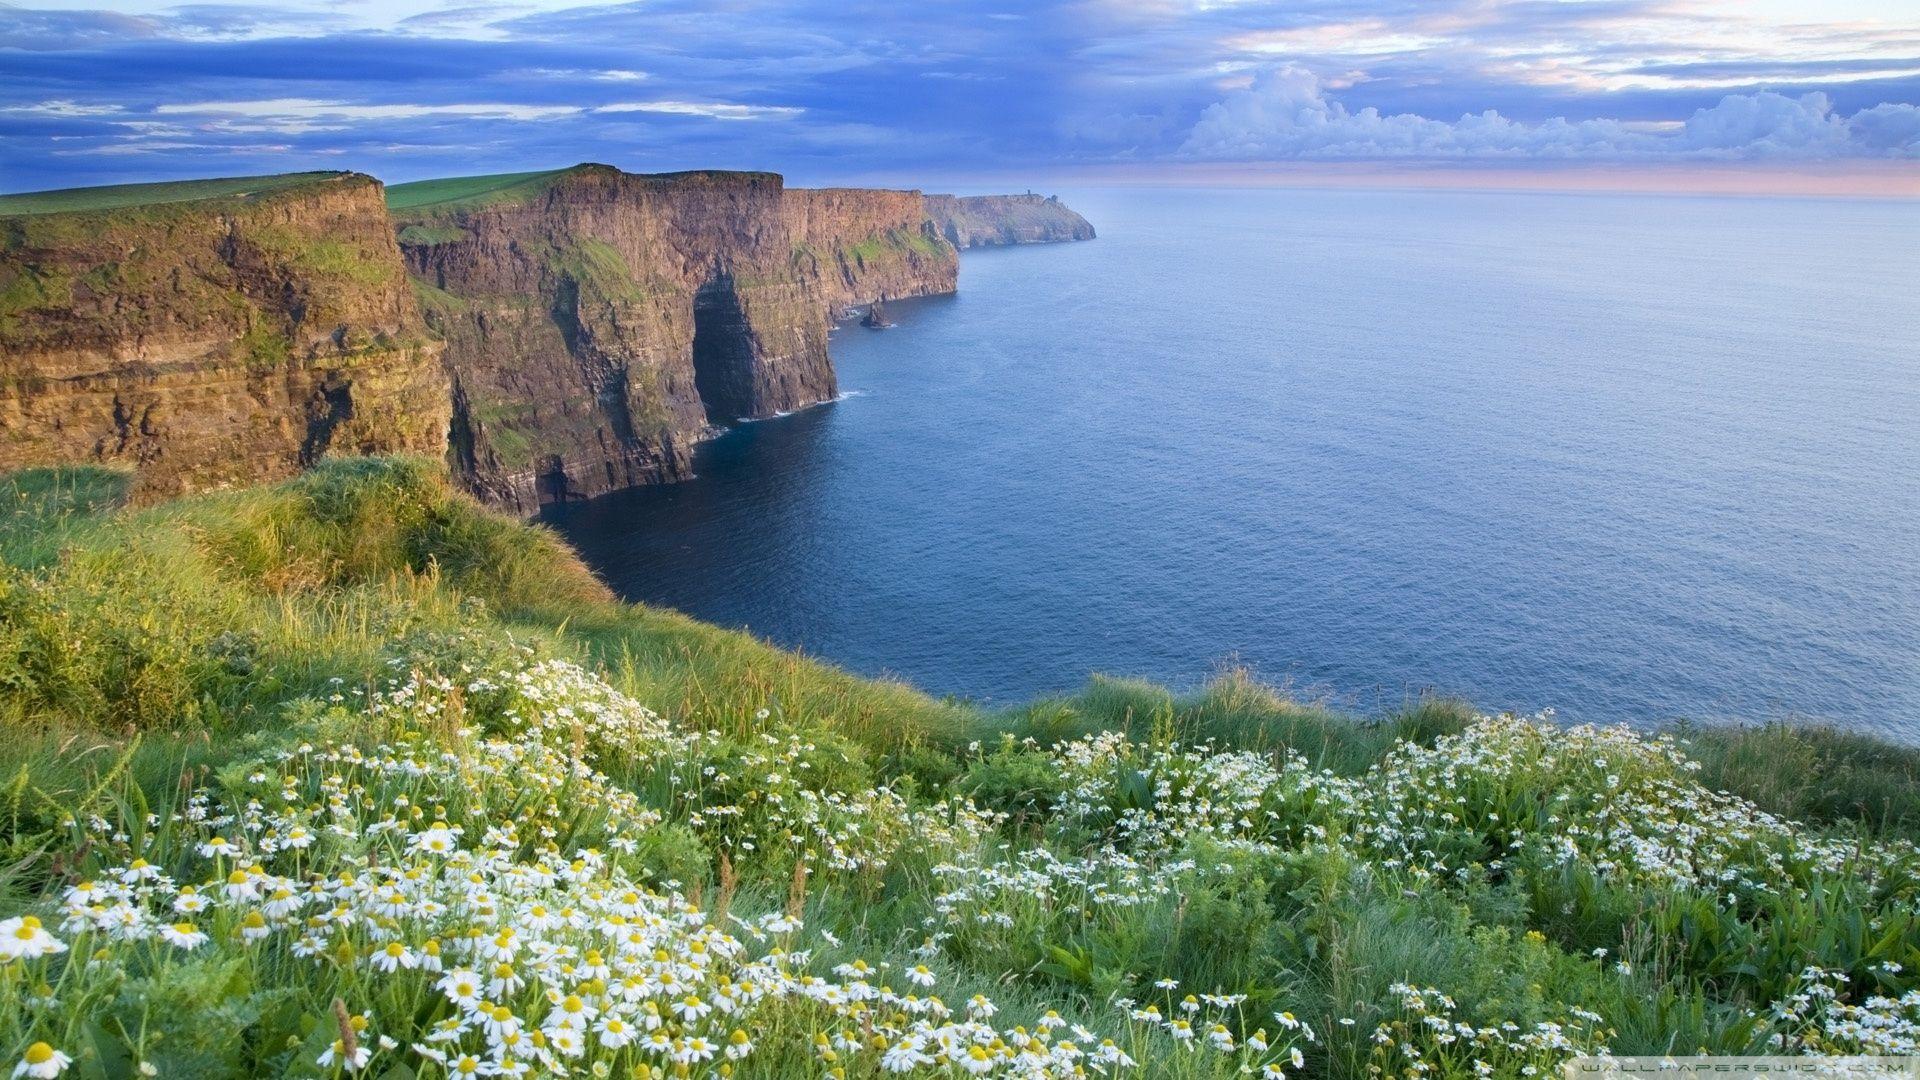 Với bờ biển dài, đáng yêu và nhiều màu sắc của mình, Ireland là một điểm đến tuyệt vời cho những ai thích khám phá. Bờ biển đầy sức sống và đẹp mắt sẽ khiến bạn cảm thấy như đang trải nghiệm cuộc sống ngày càng thú vị hơn. Nhấn vào hình ảnh để khám phá và tận hưởng sự đa dạng và sức sống của bờ biển Ireland.